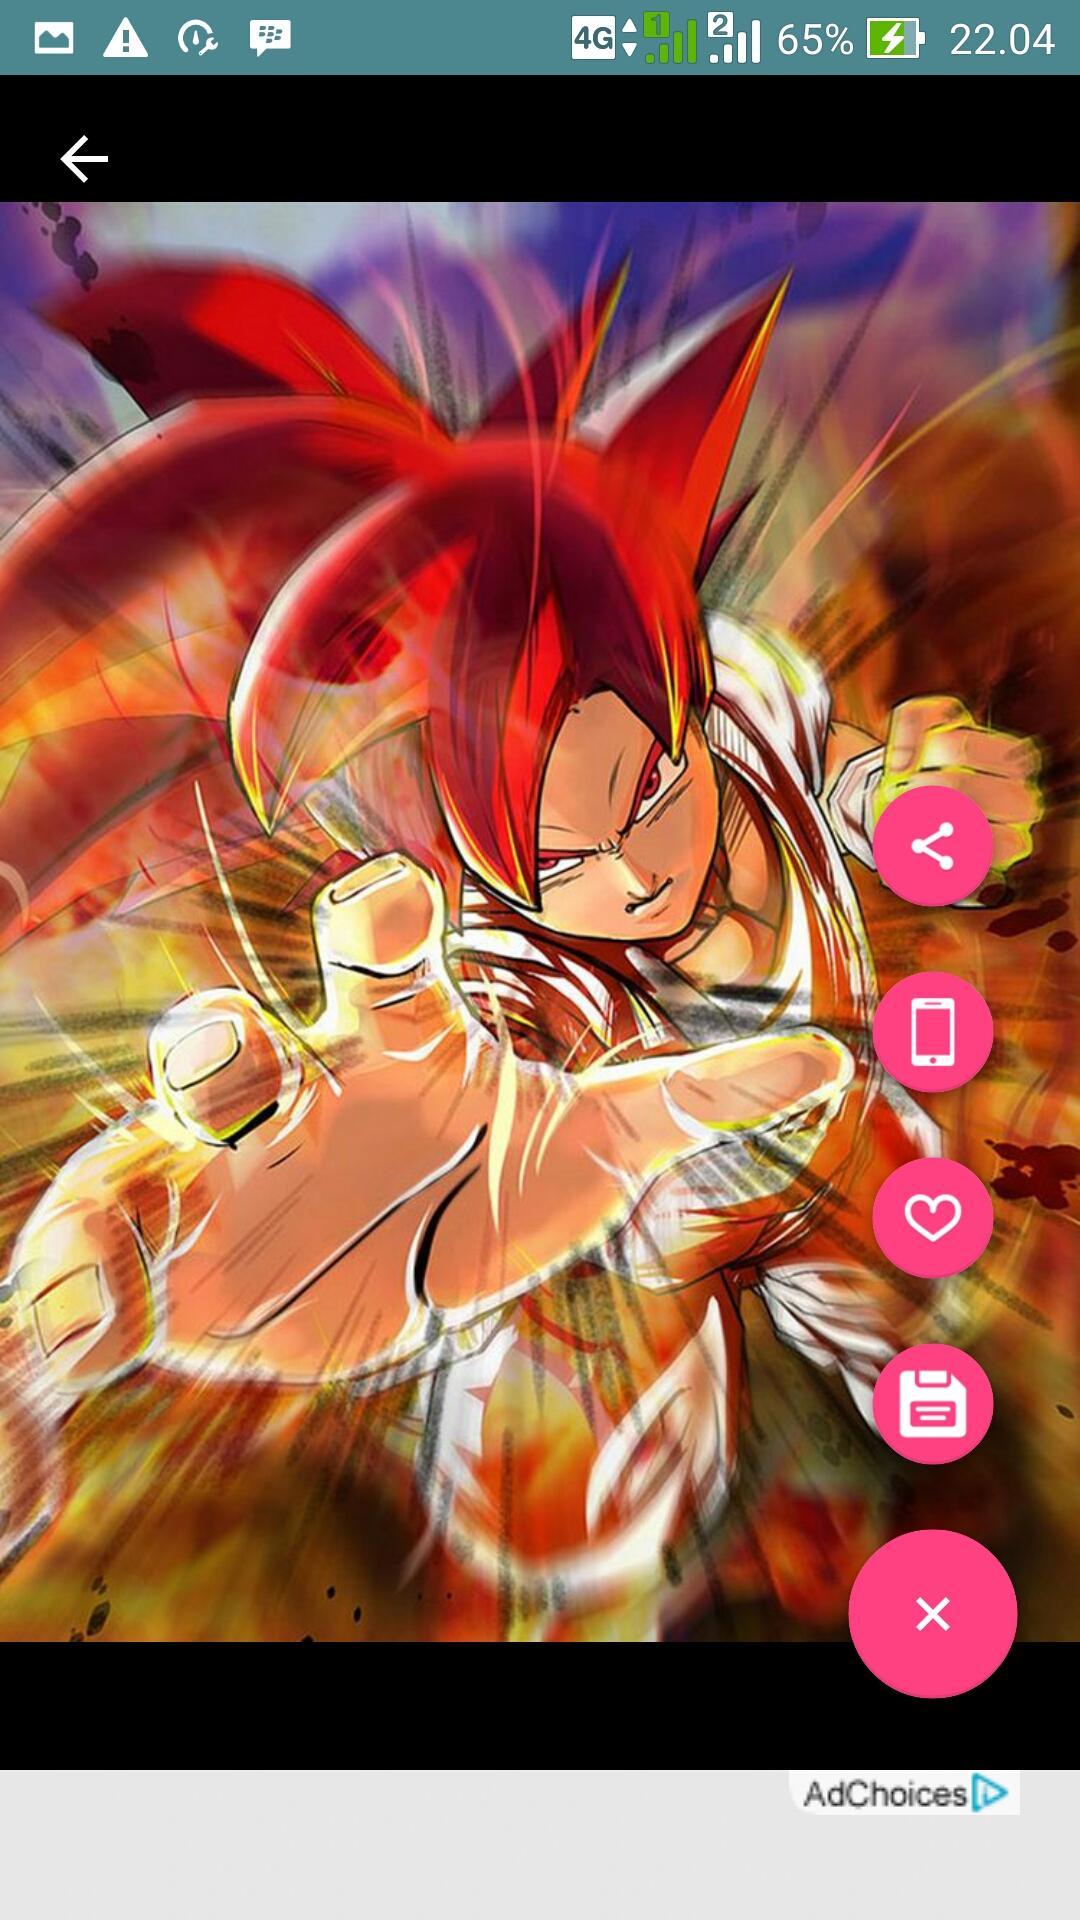 ดาวน์โหลด Ultra Instinct Goku DBS Wallpaper APK สำหรับ Android